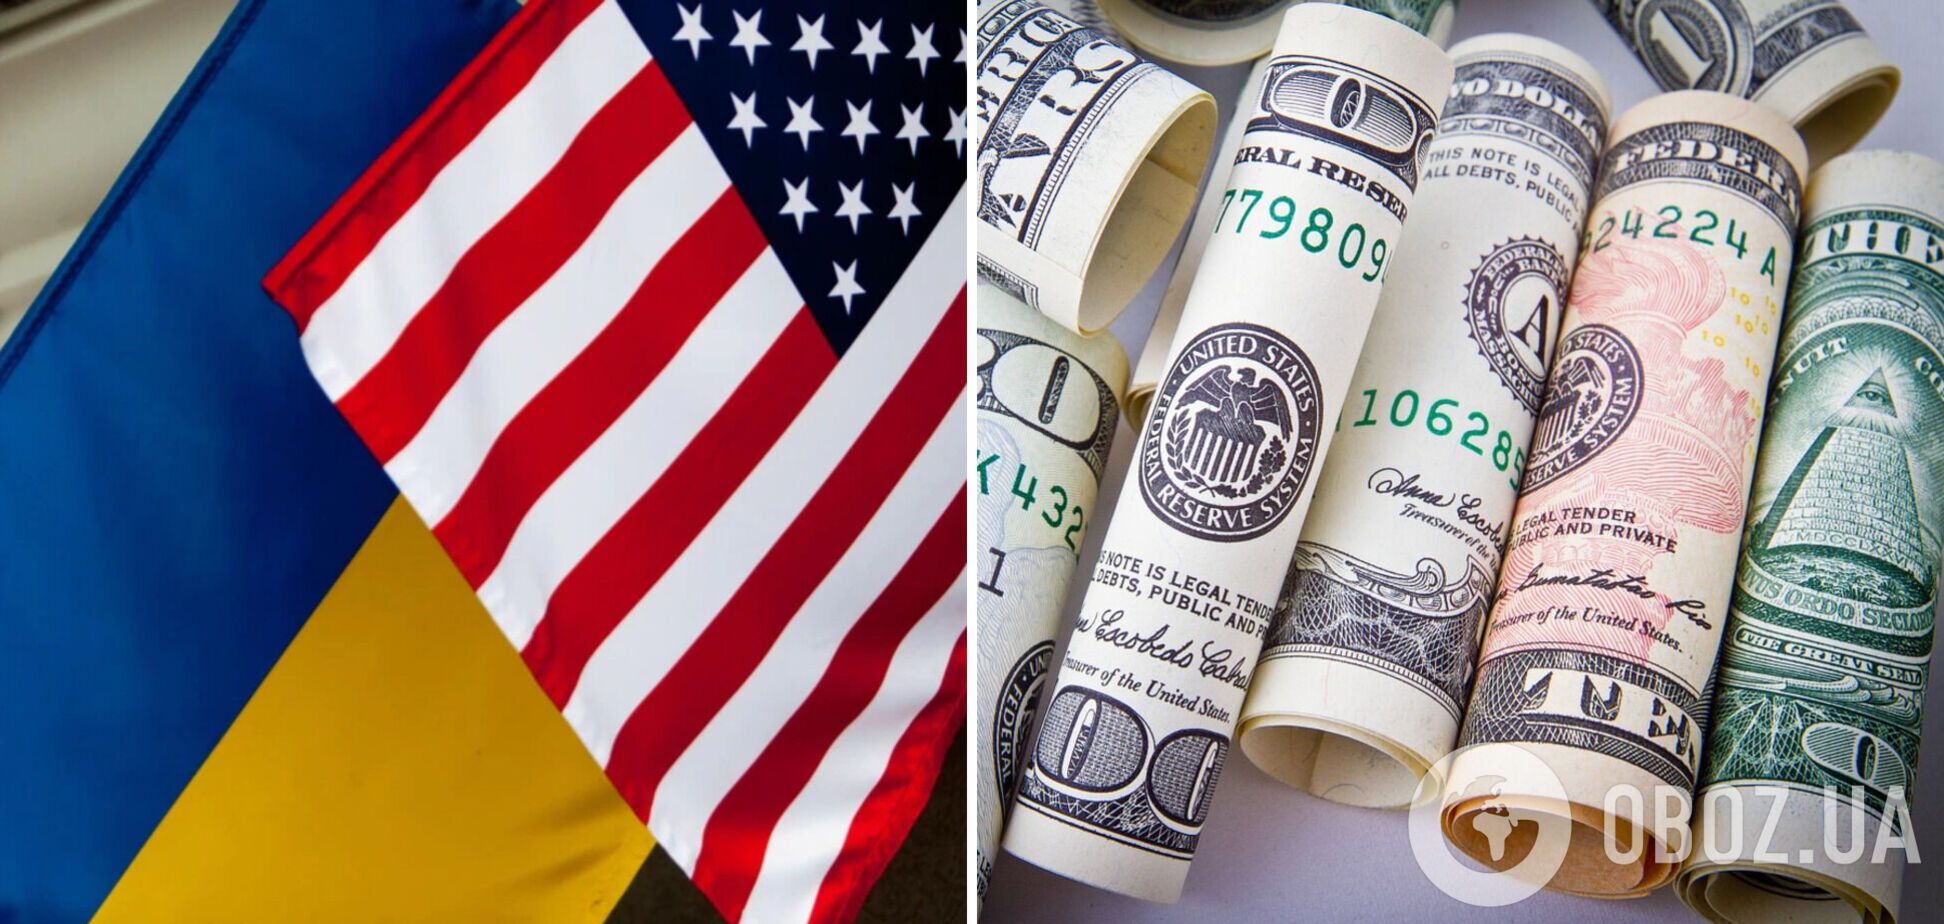 Украина получила от США 1,3 млрд долларов помощи